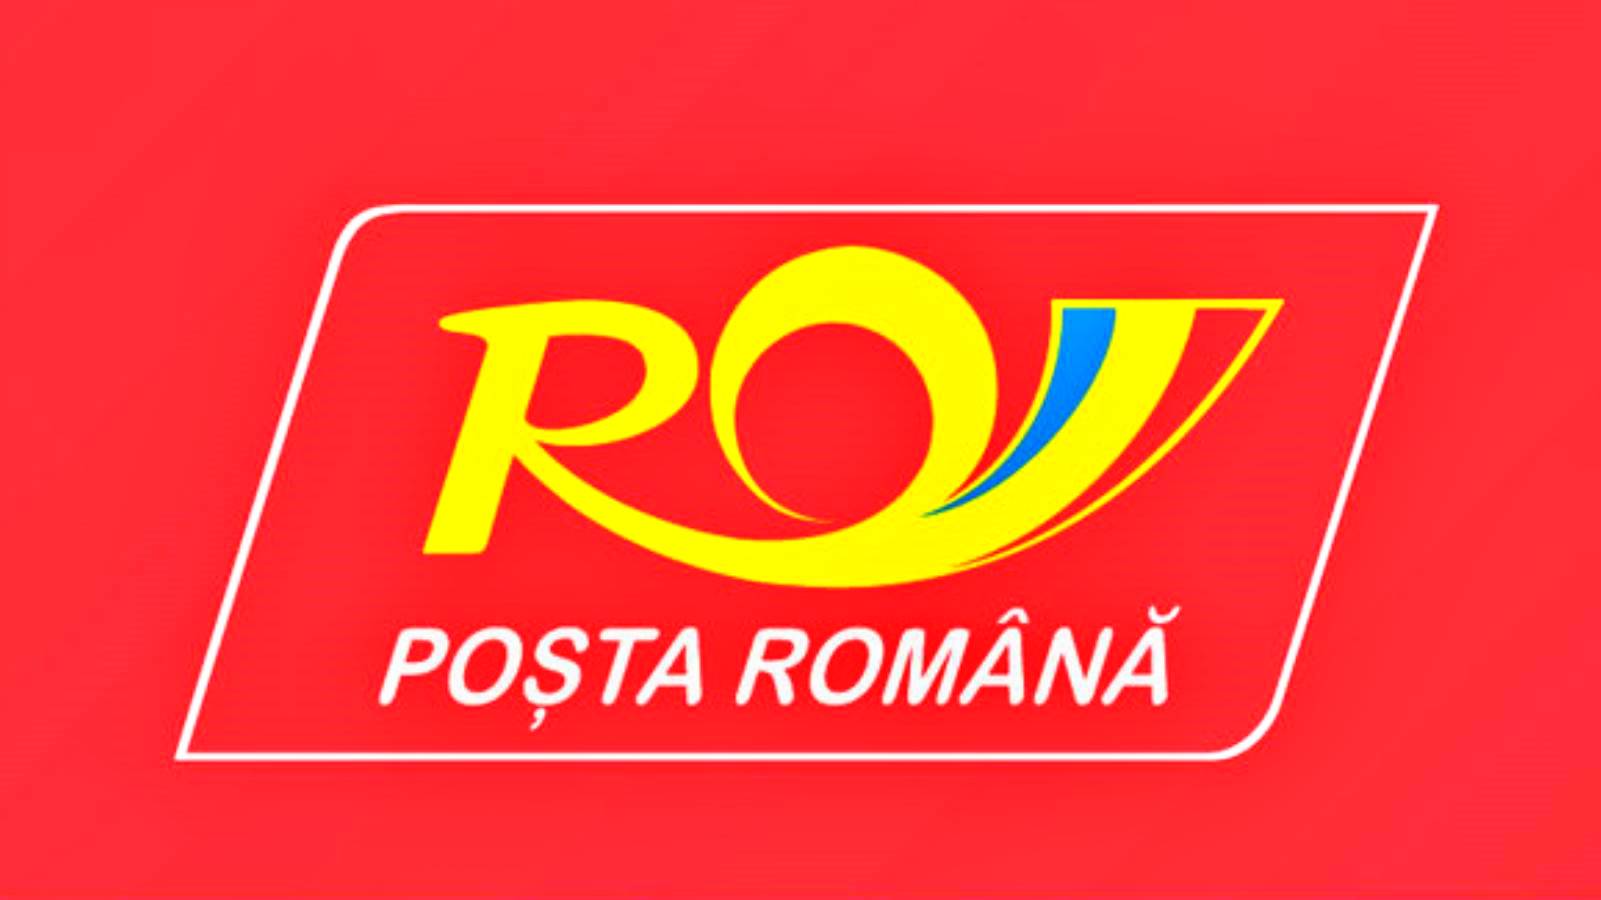 Roemeense postverzekering voor zendingen tegen diefstal en vernietiging